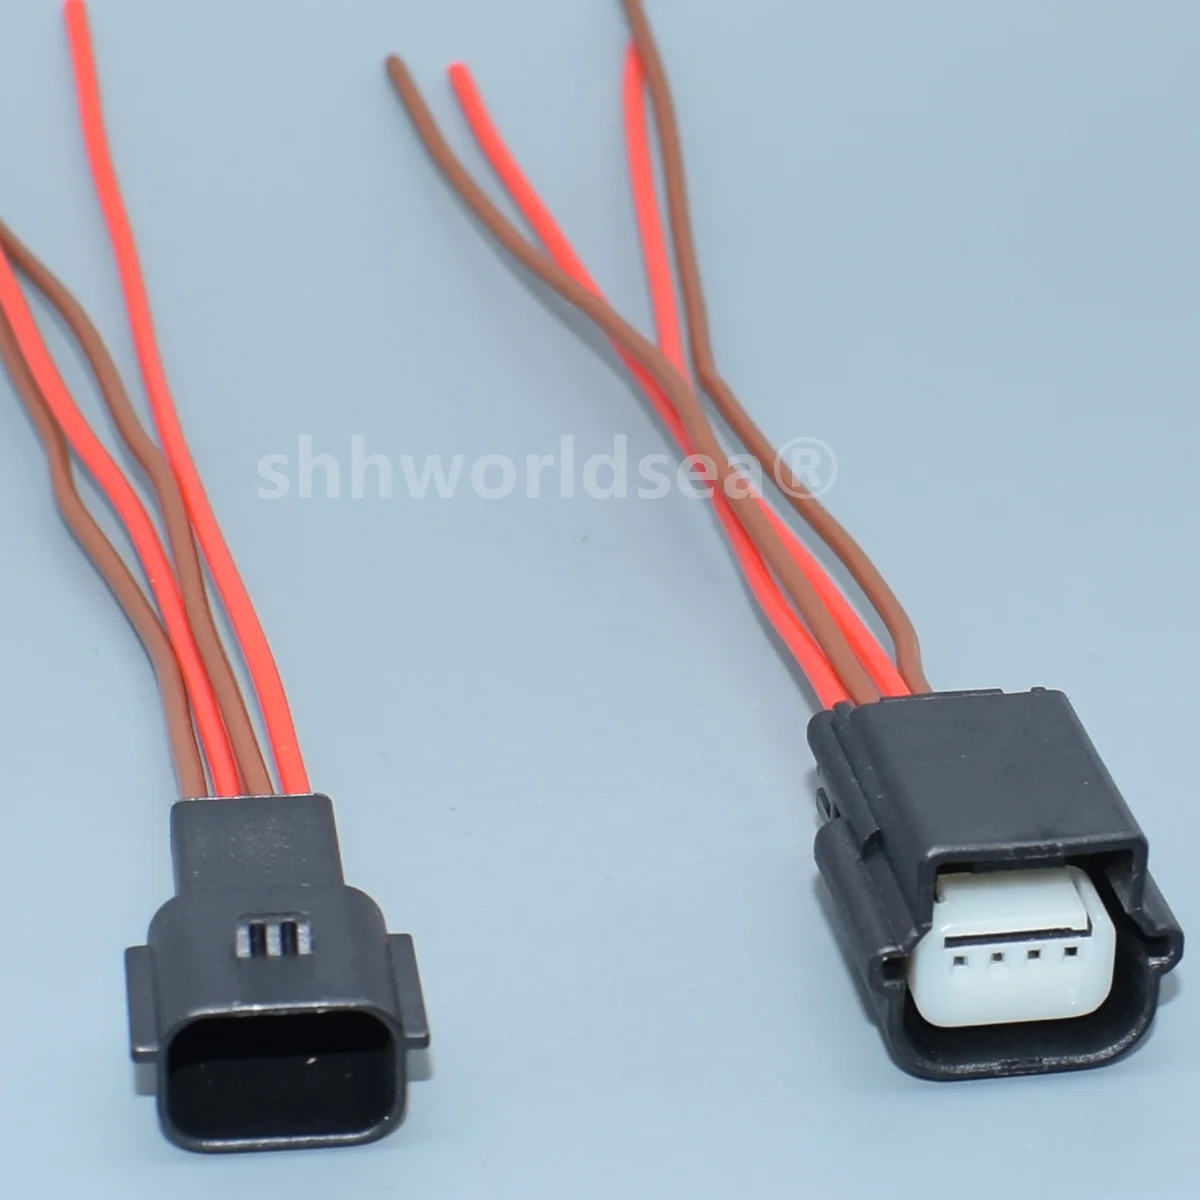 shhworldsea 4 tűs 0.6-os sorozatú autó passzív kulcs nélküli belépő antenna érzékelő huzal csatlakozó kábel lezáratlan aljzat - 2